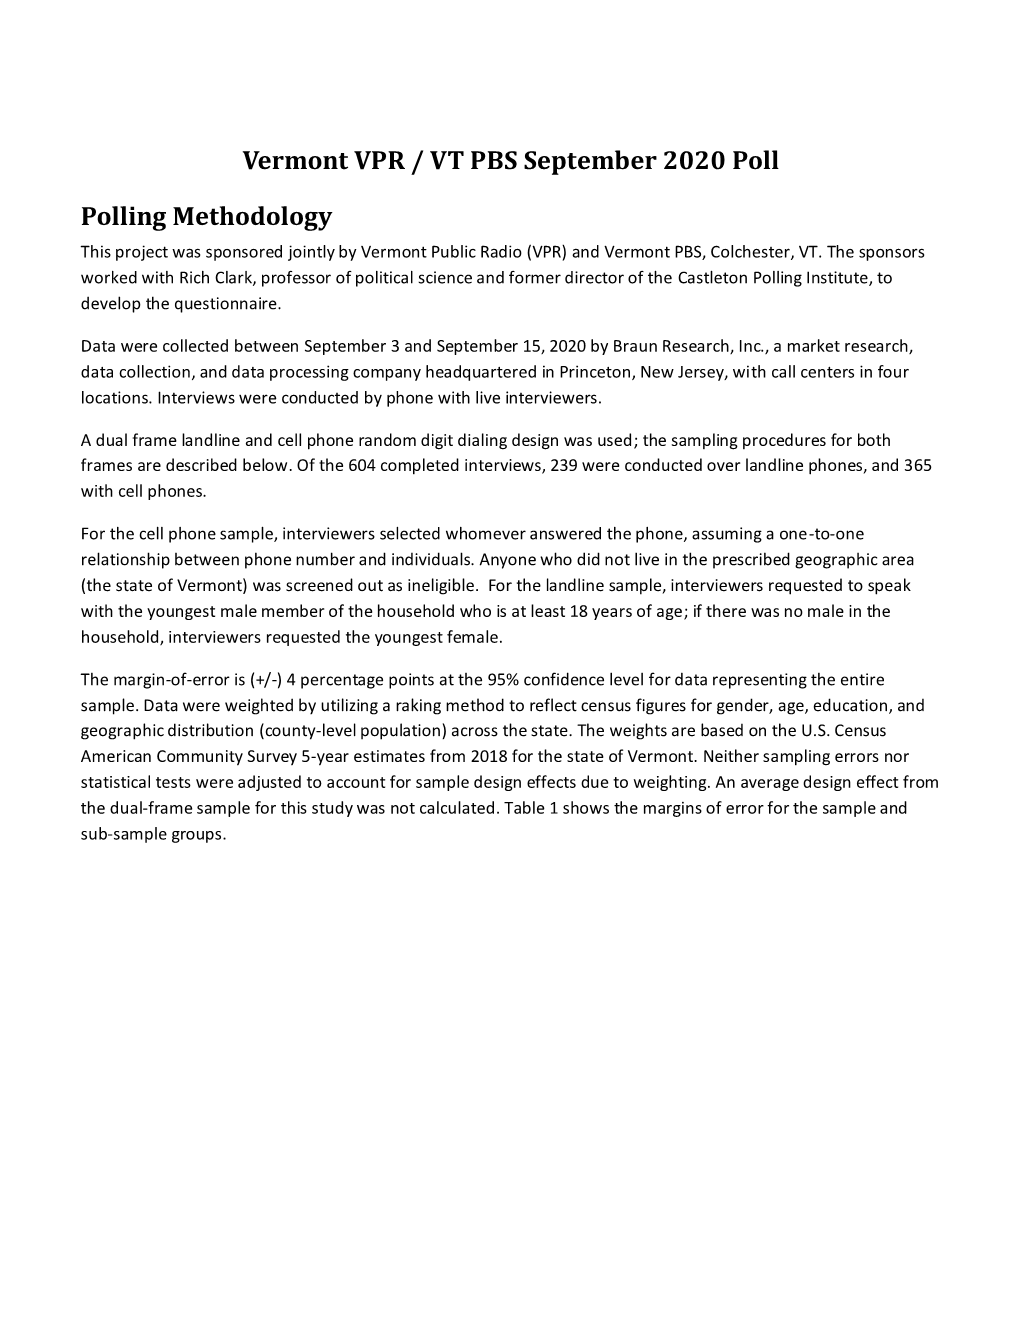 Vermont VPR / VT PBS September 2020 Poll Polling Methodology